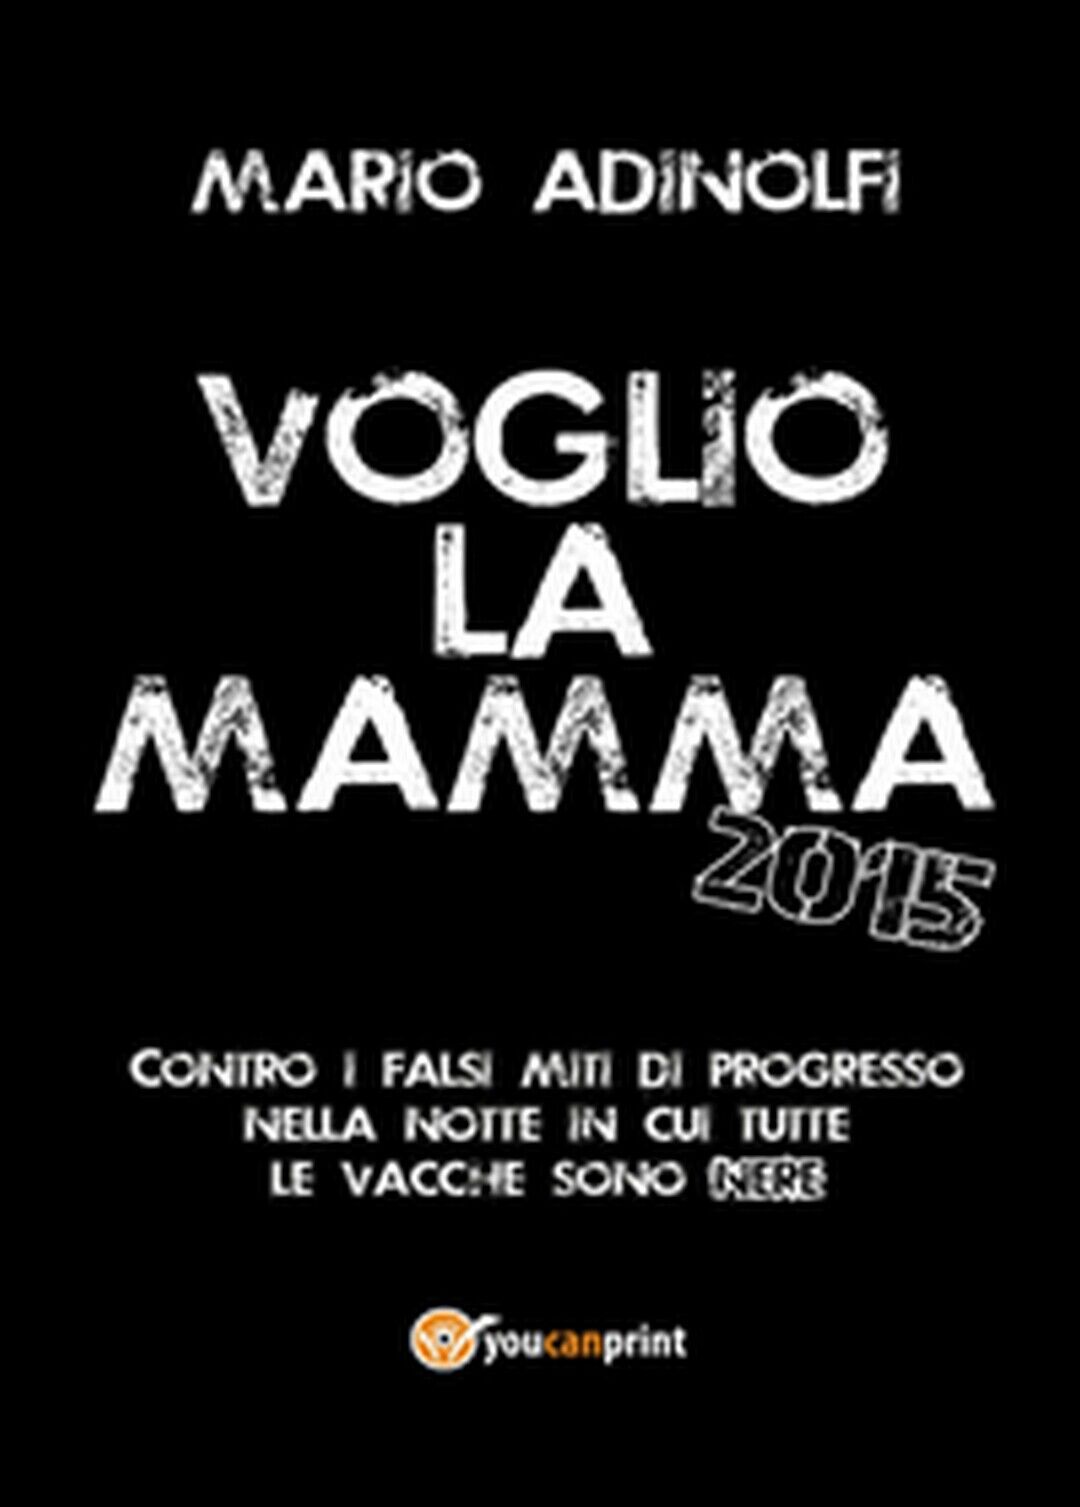 Voglio la mamma 2015,  di Mario Adinolfi,  2014,  Youcanprint